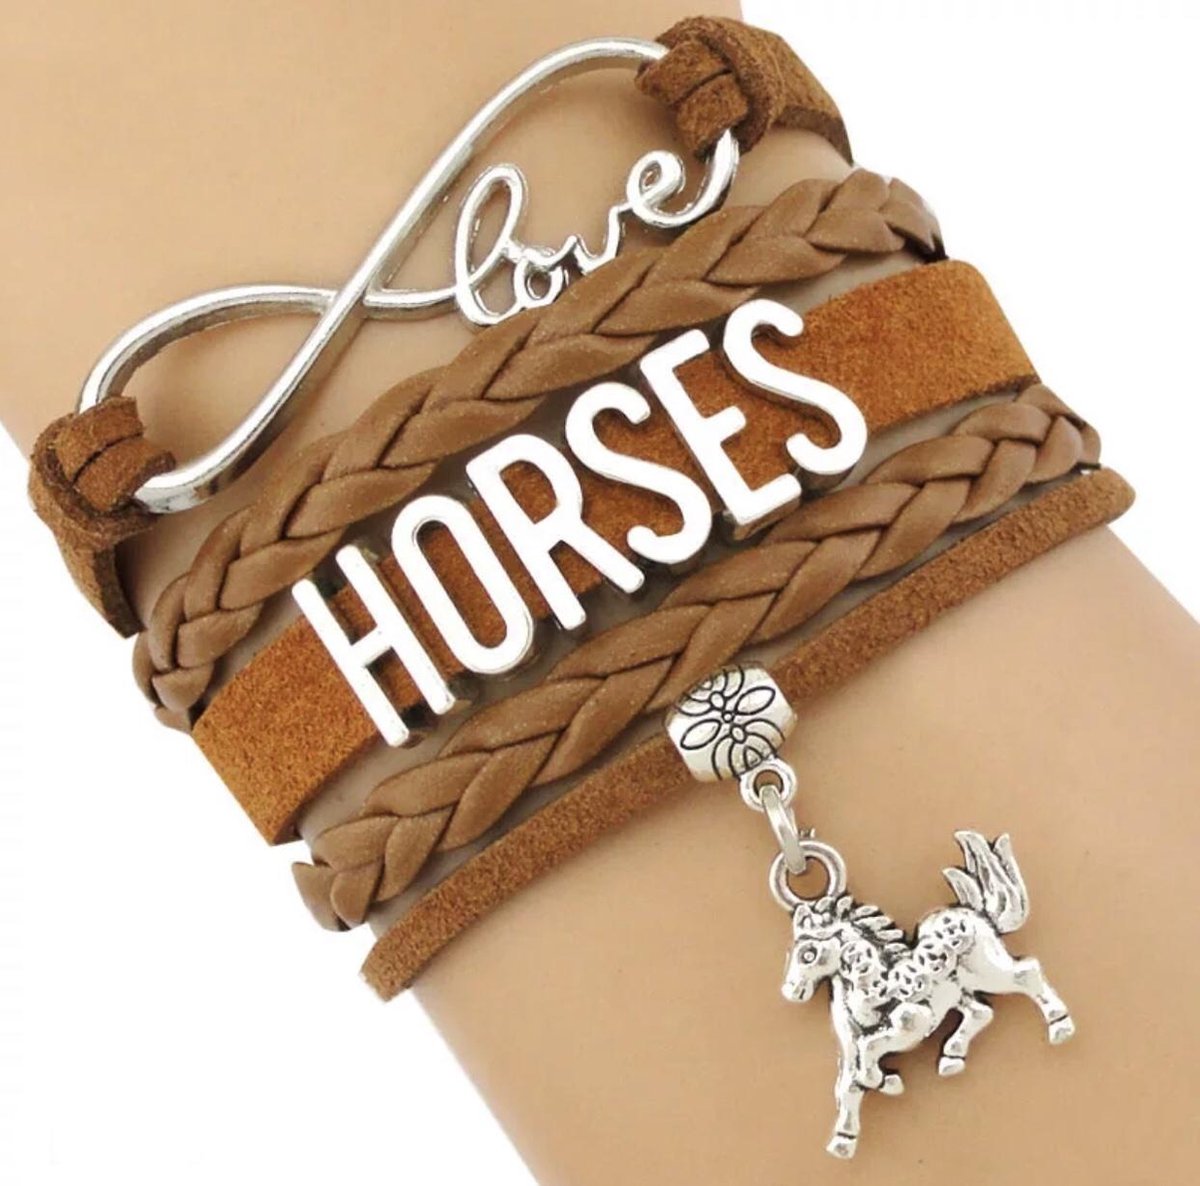 Armbandje met paarden (Horses) hangertje.